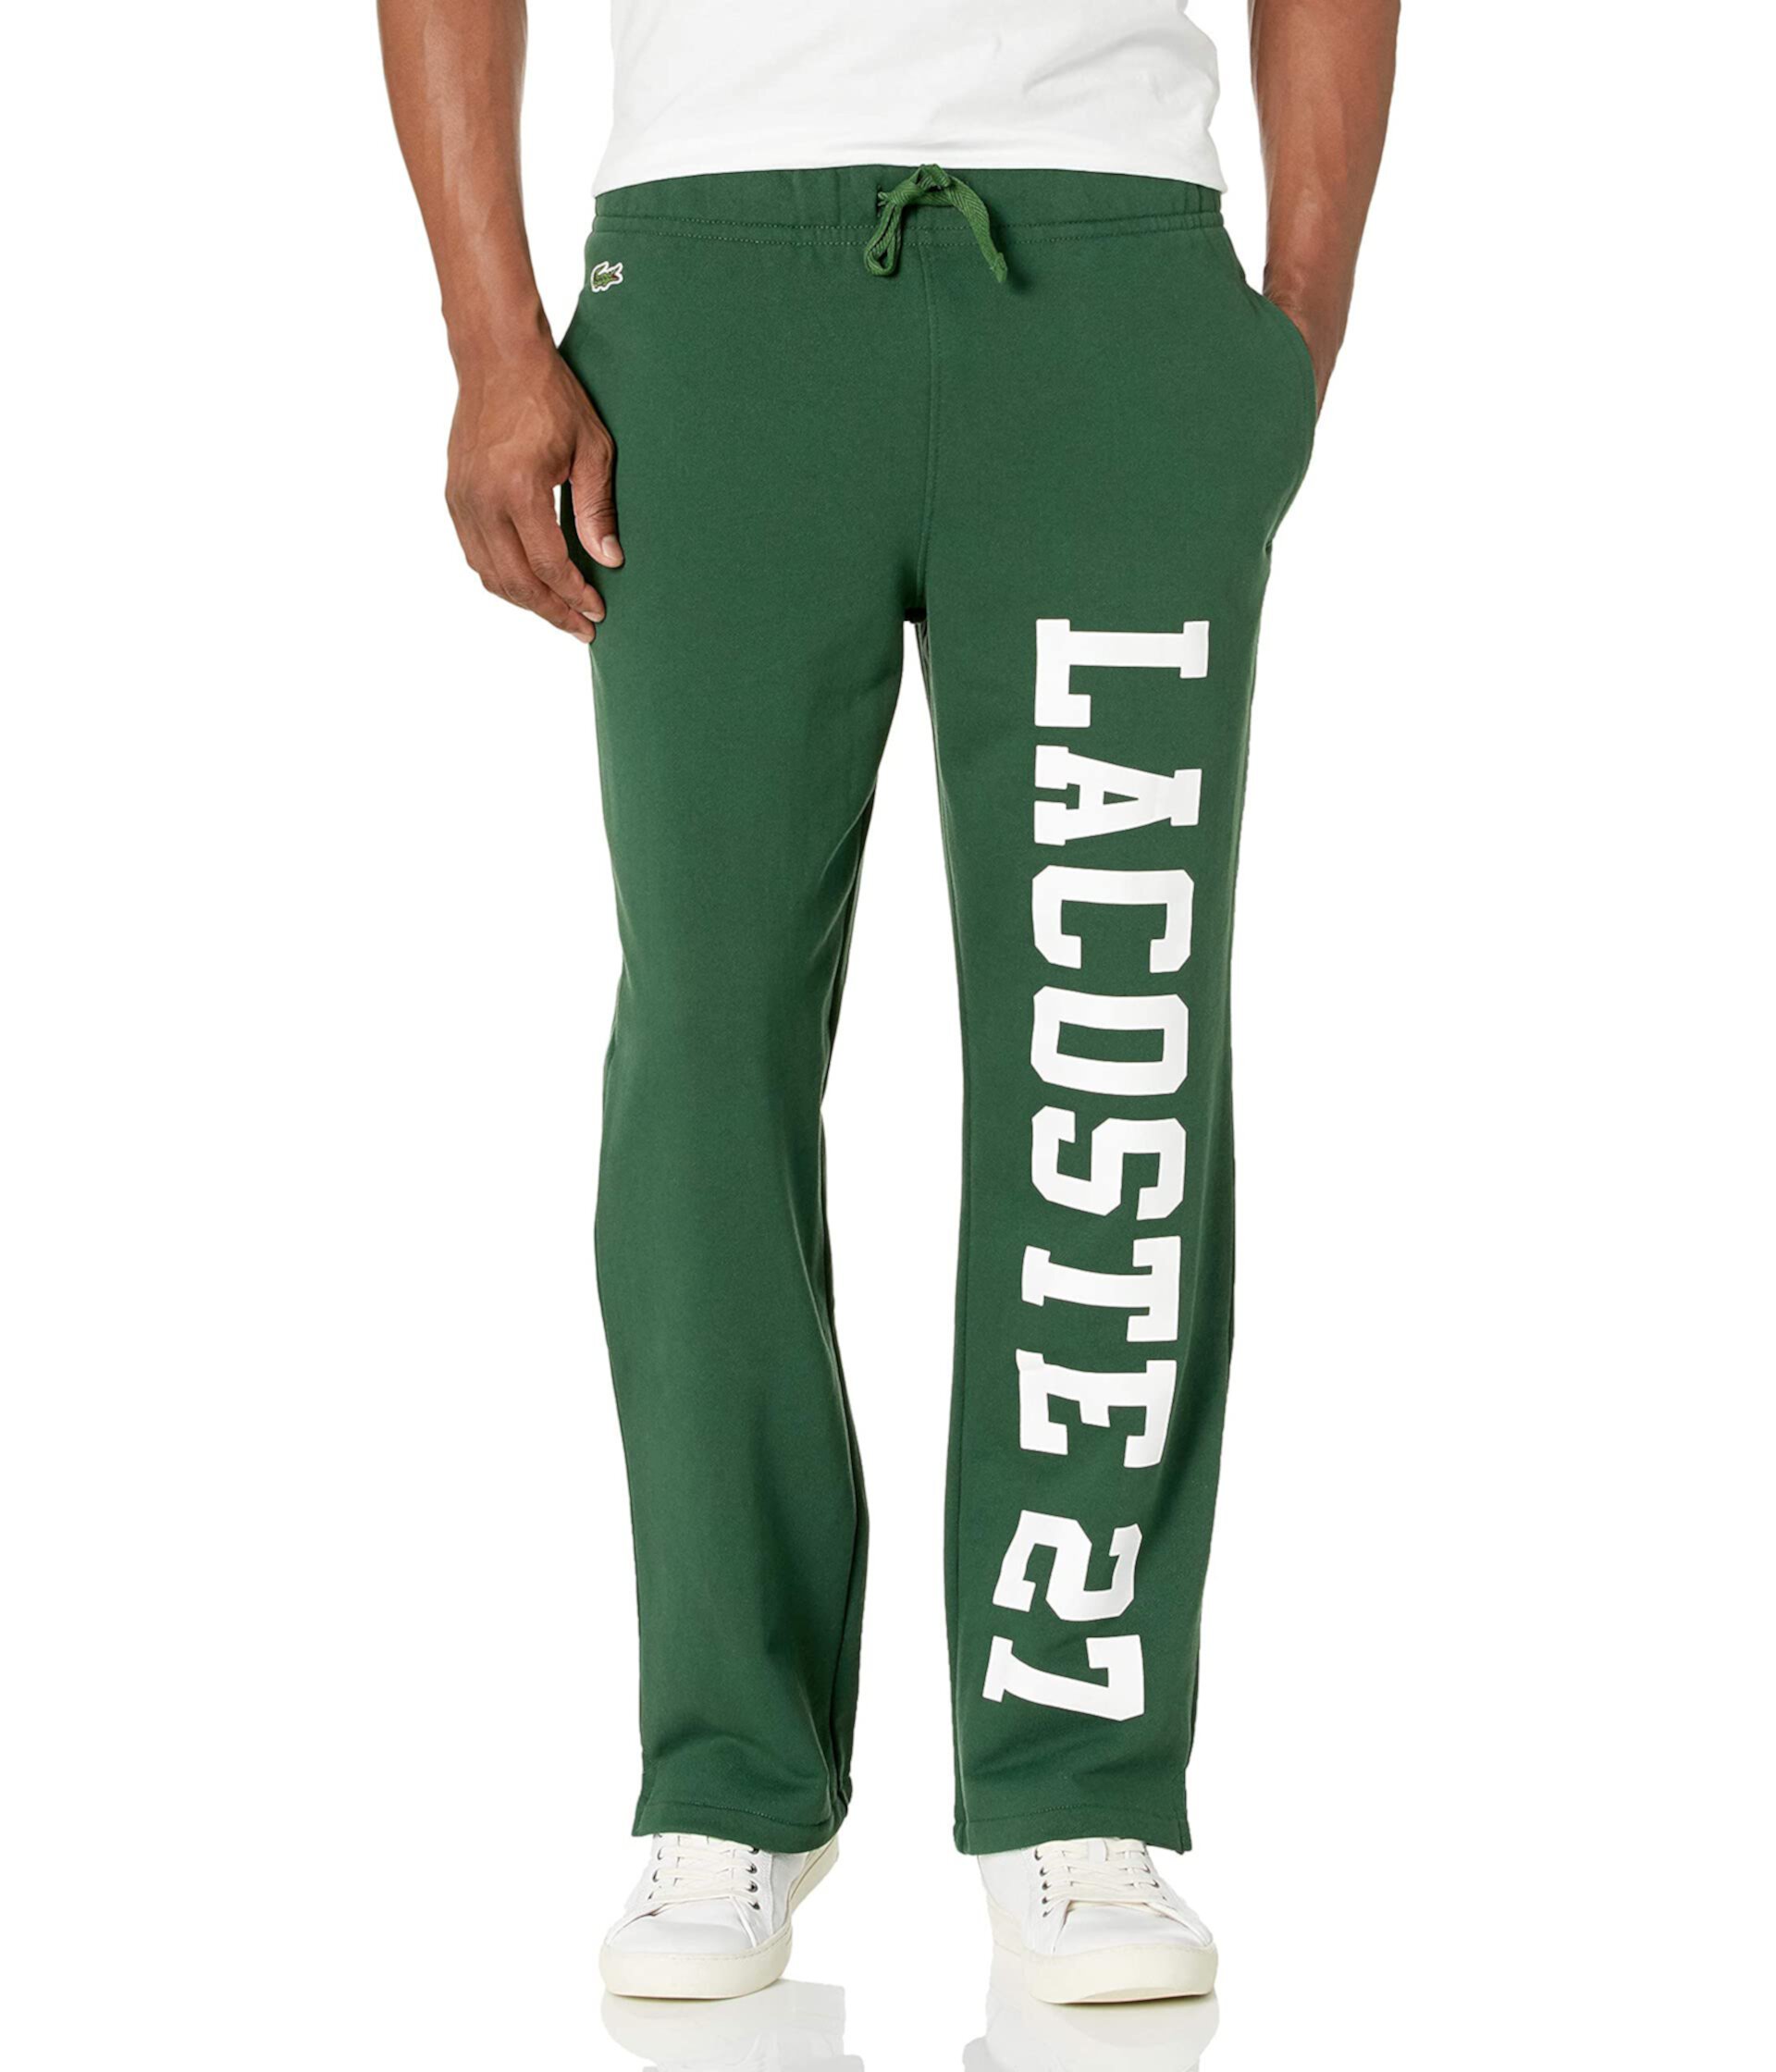 Спортивные штаны с надписью на нижнем белье с рисунком Lacoste